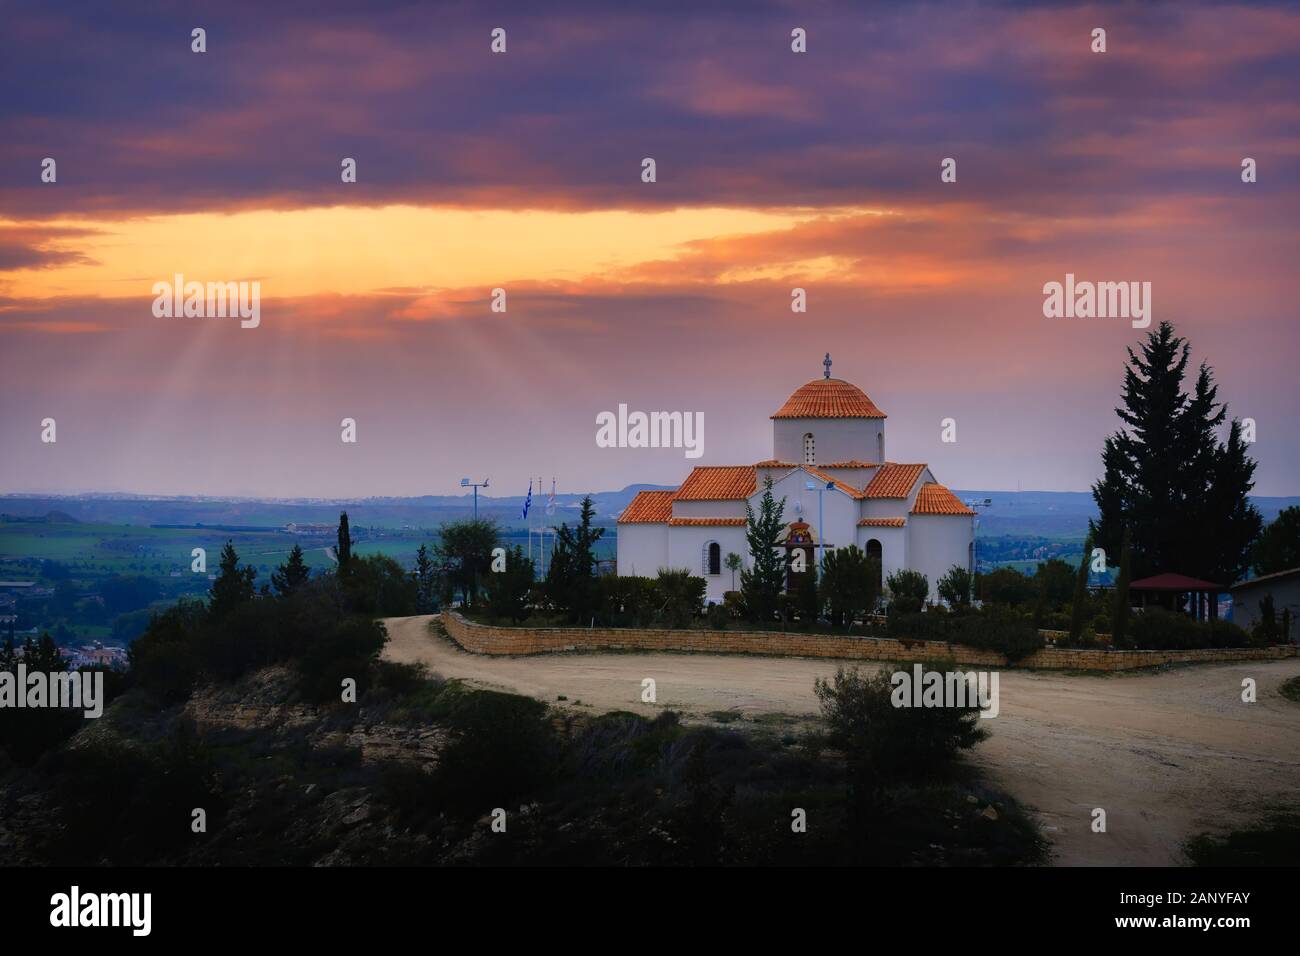 Panagia Tsampika Iglesia ortodoxa en la cima de una colina en el distrito de Nicosia, Chipre en una puesta de sol con rayos de luz Foto de stock